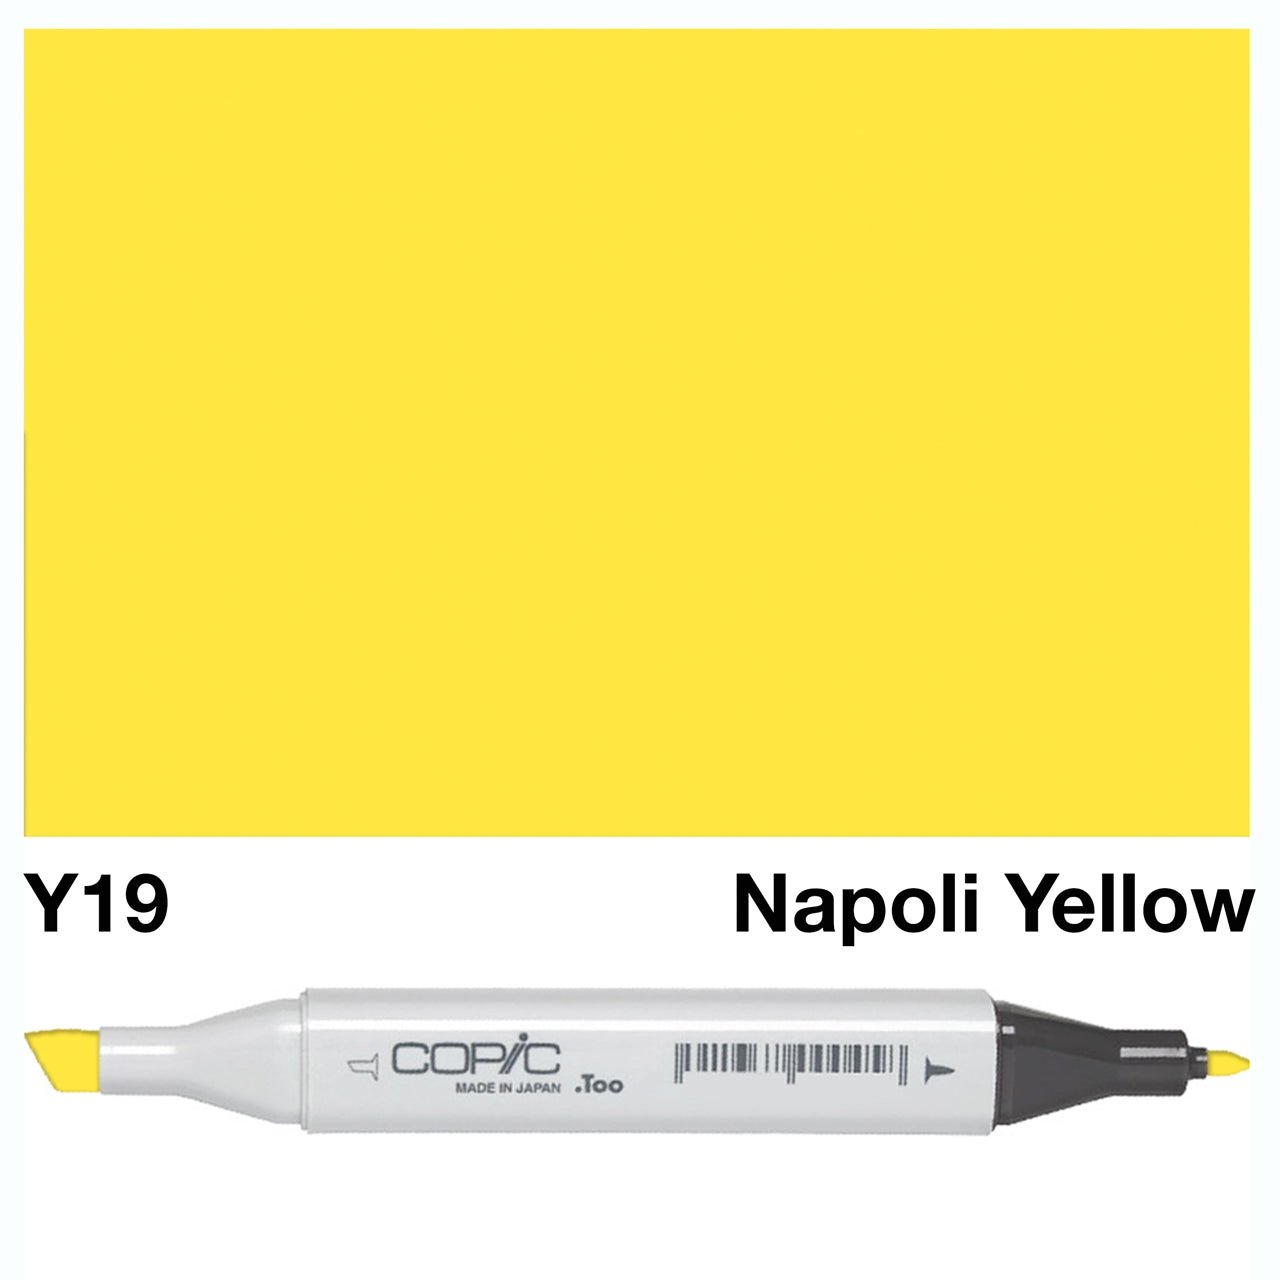 Copic Classic Marker Y19 Napoli Yellow - theartshop.com.au